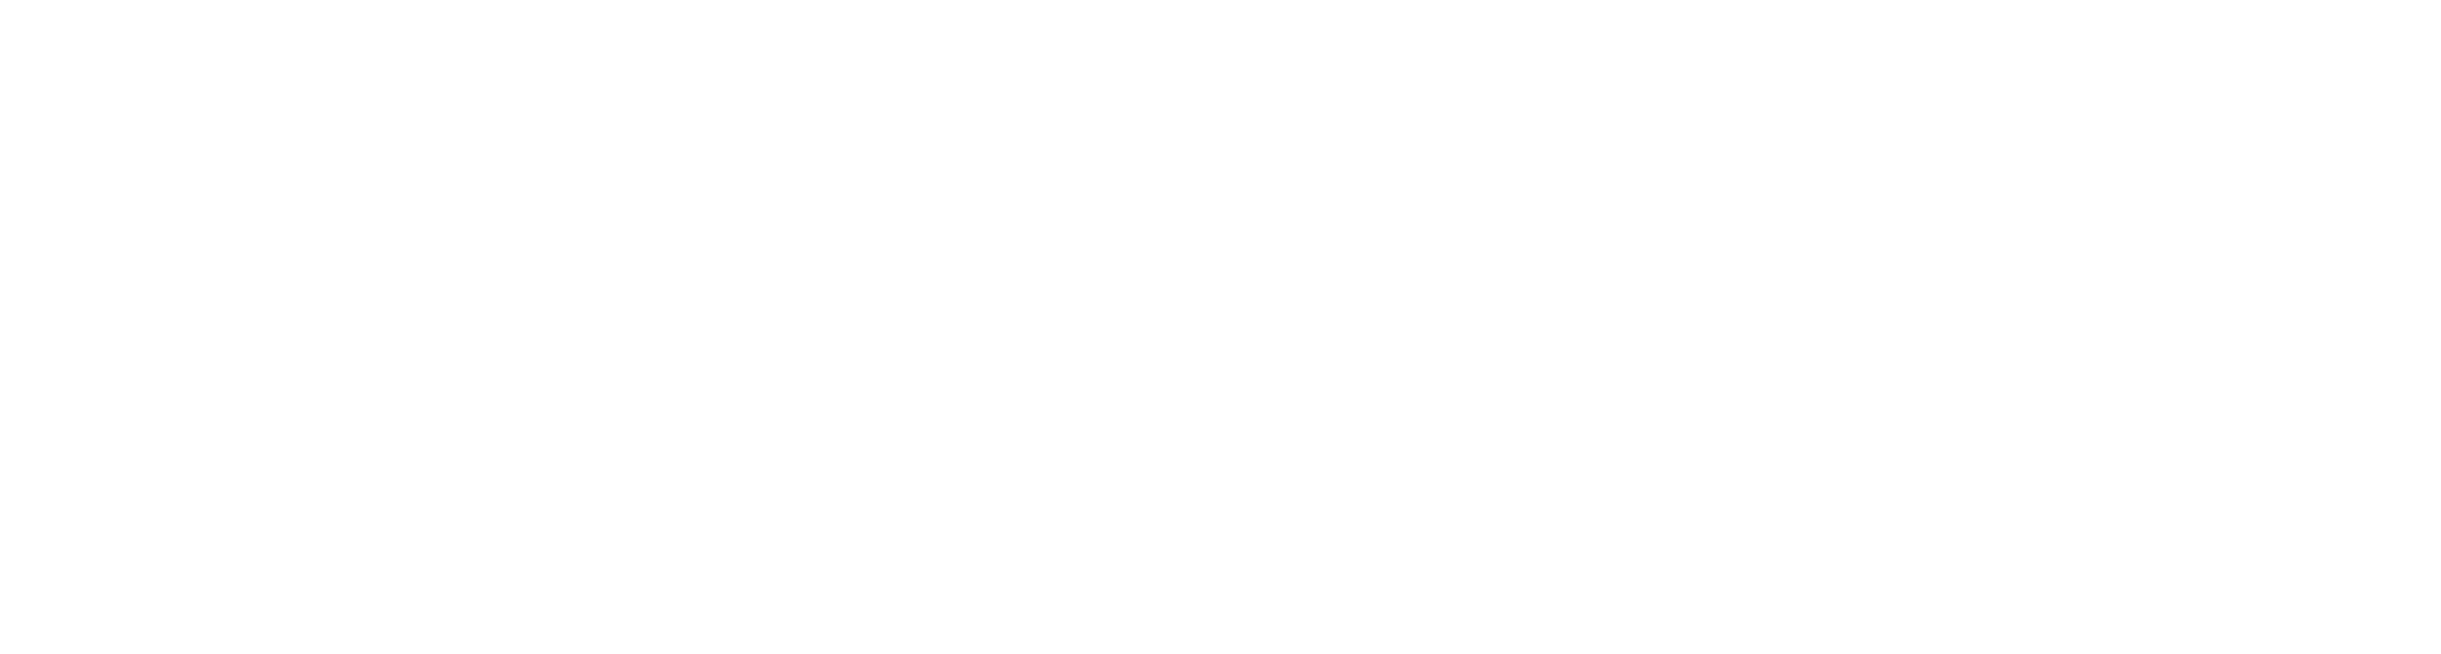 Preferred Partner logo